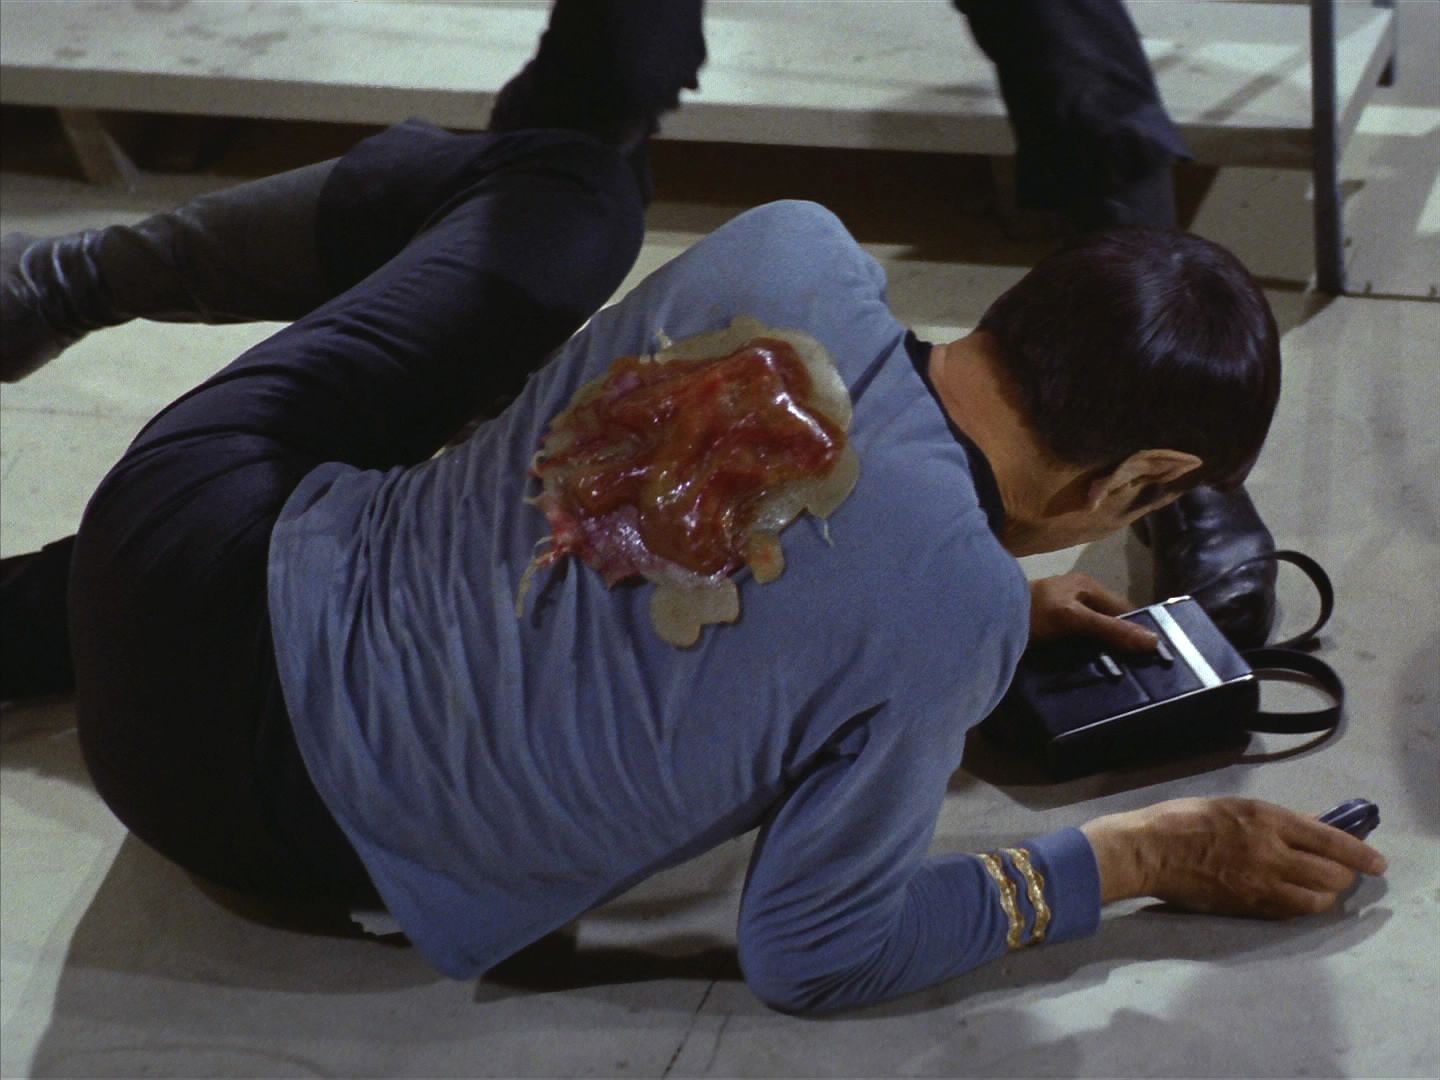 Jedno z nich se přisálo na Spocka. Ač je Kirk téměř okamžitě strhne, přesto doktor při operaci zjistí, že to je nervový parazit, který se už usídlil ve Spockově nervové soustavě.